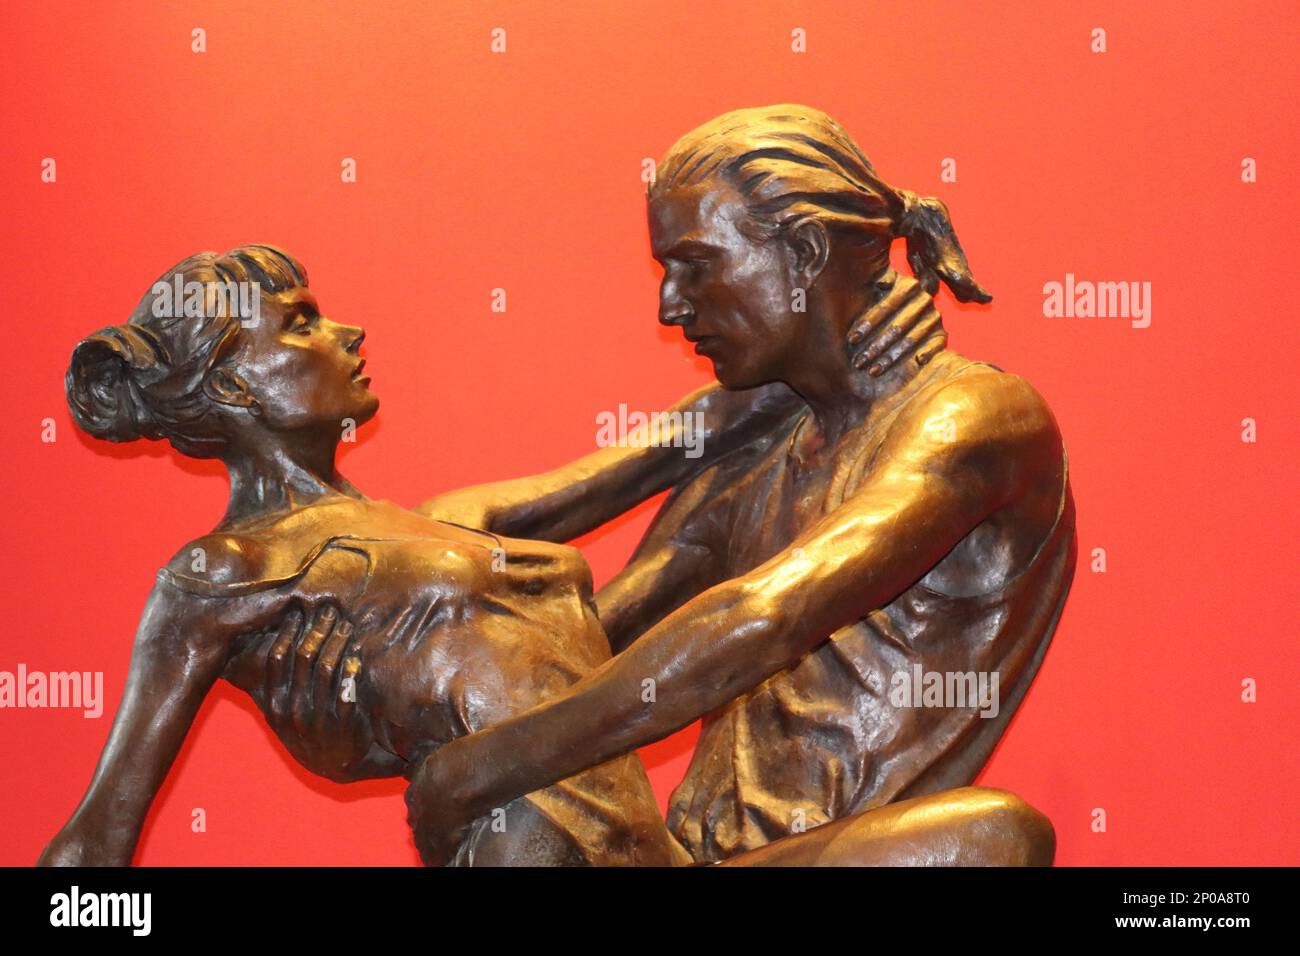 Sculpture de bronze grandeur nature intitulée “Tango” par les Johnson, commandée pour illustrer différents styles de danse au lieu de danse de Carmen à bord d’Aurora. Banque D'Images